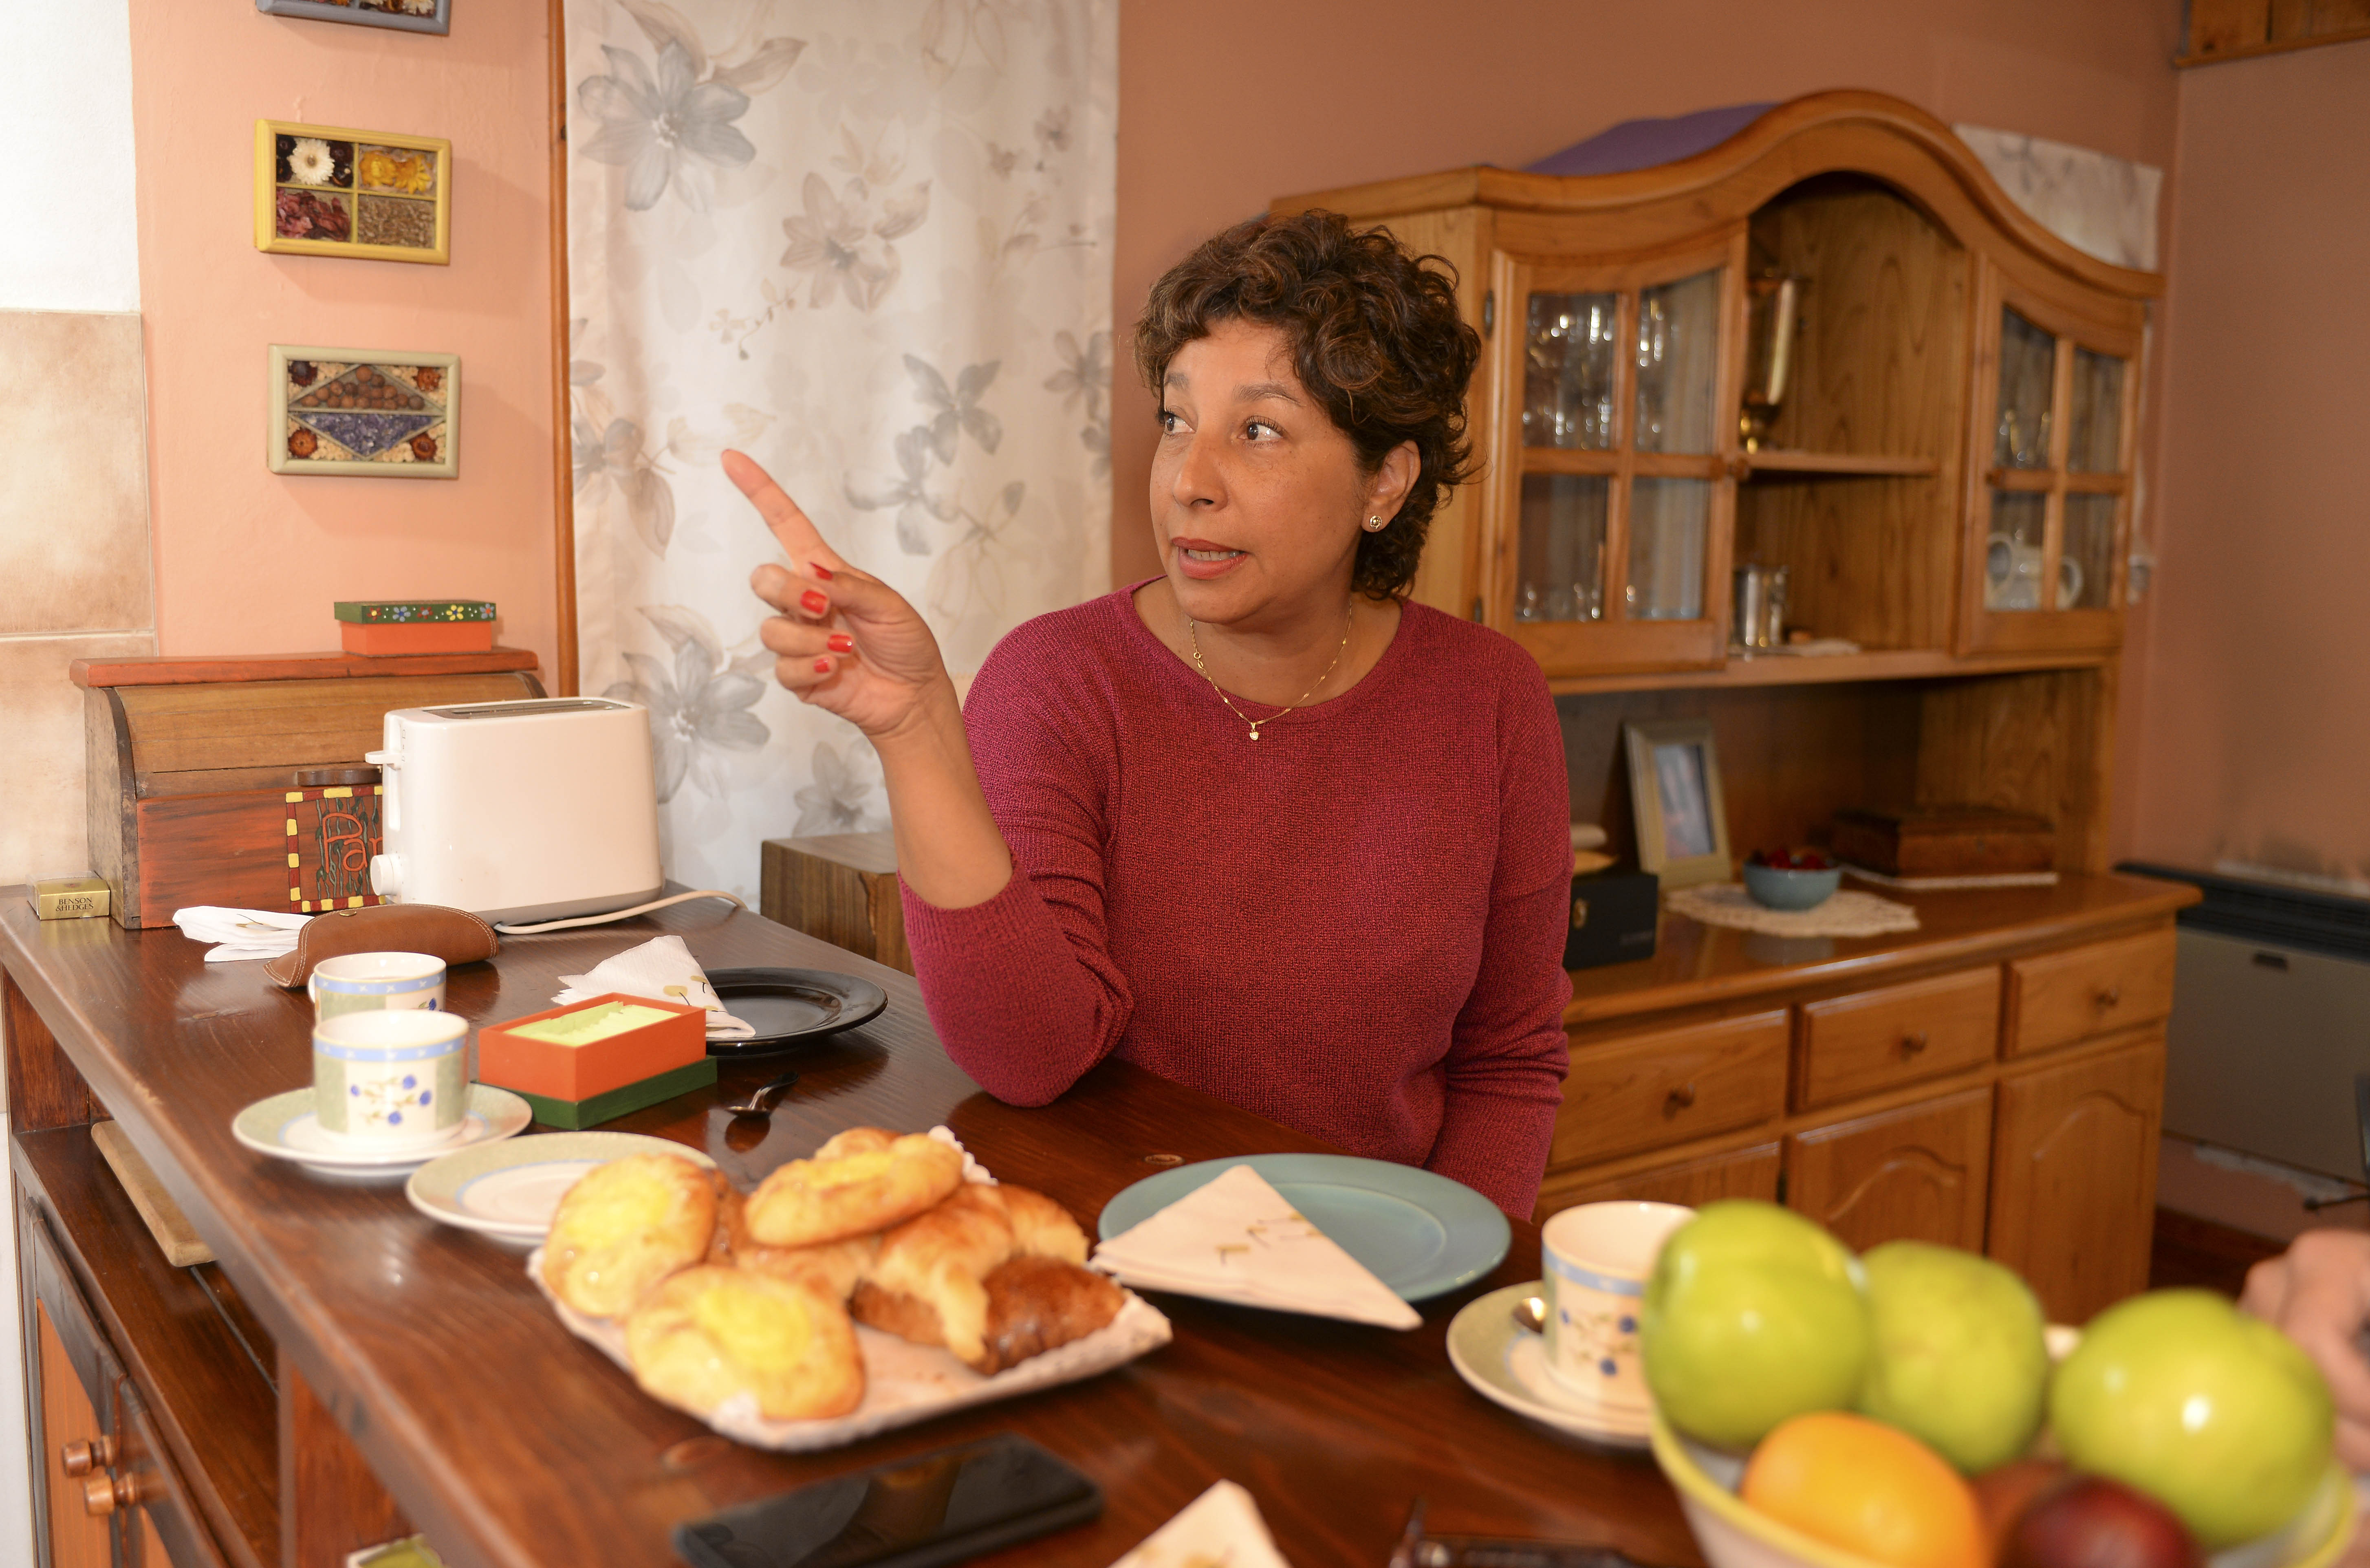 La candidata Arabela Carreras en la cocina de su casa en el barrio Pinar de Festa, Bariloche. (Alfredo Leiva)